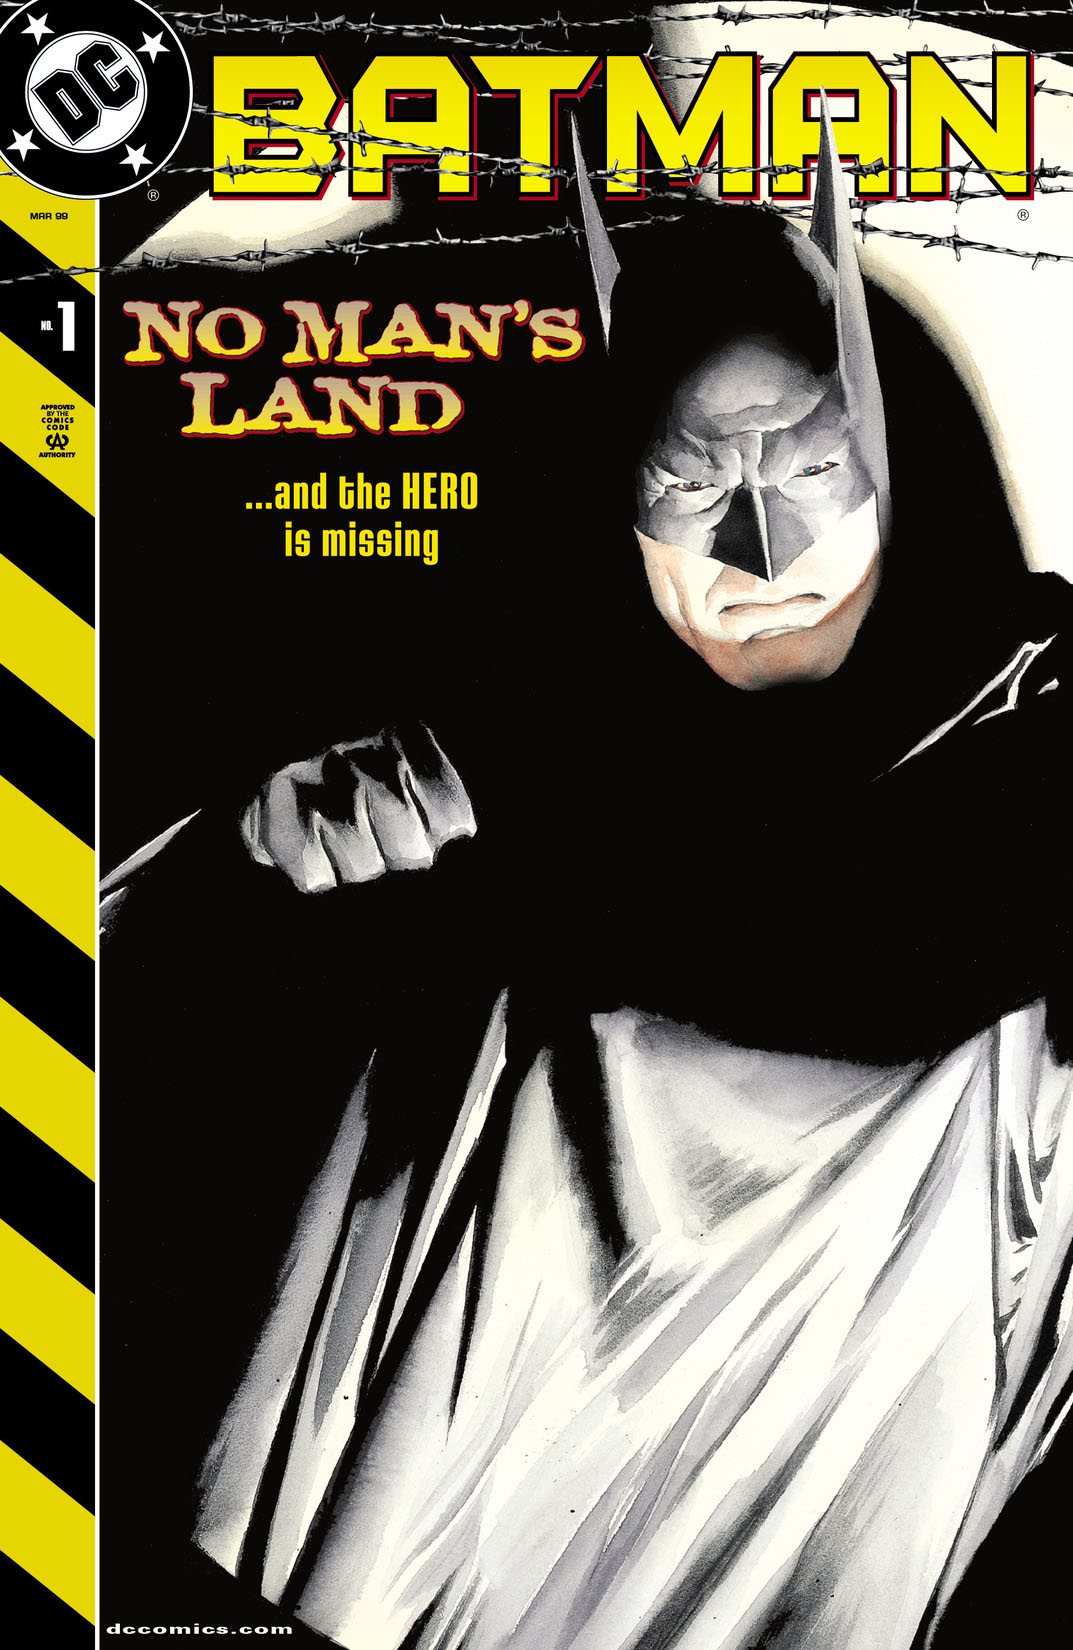 Batman: No Man's Land (Standard) #1 preview images